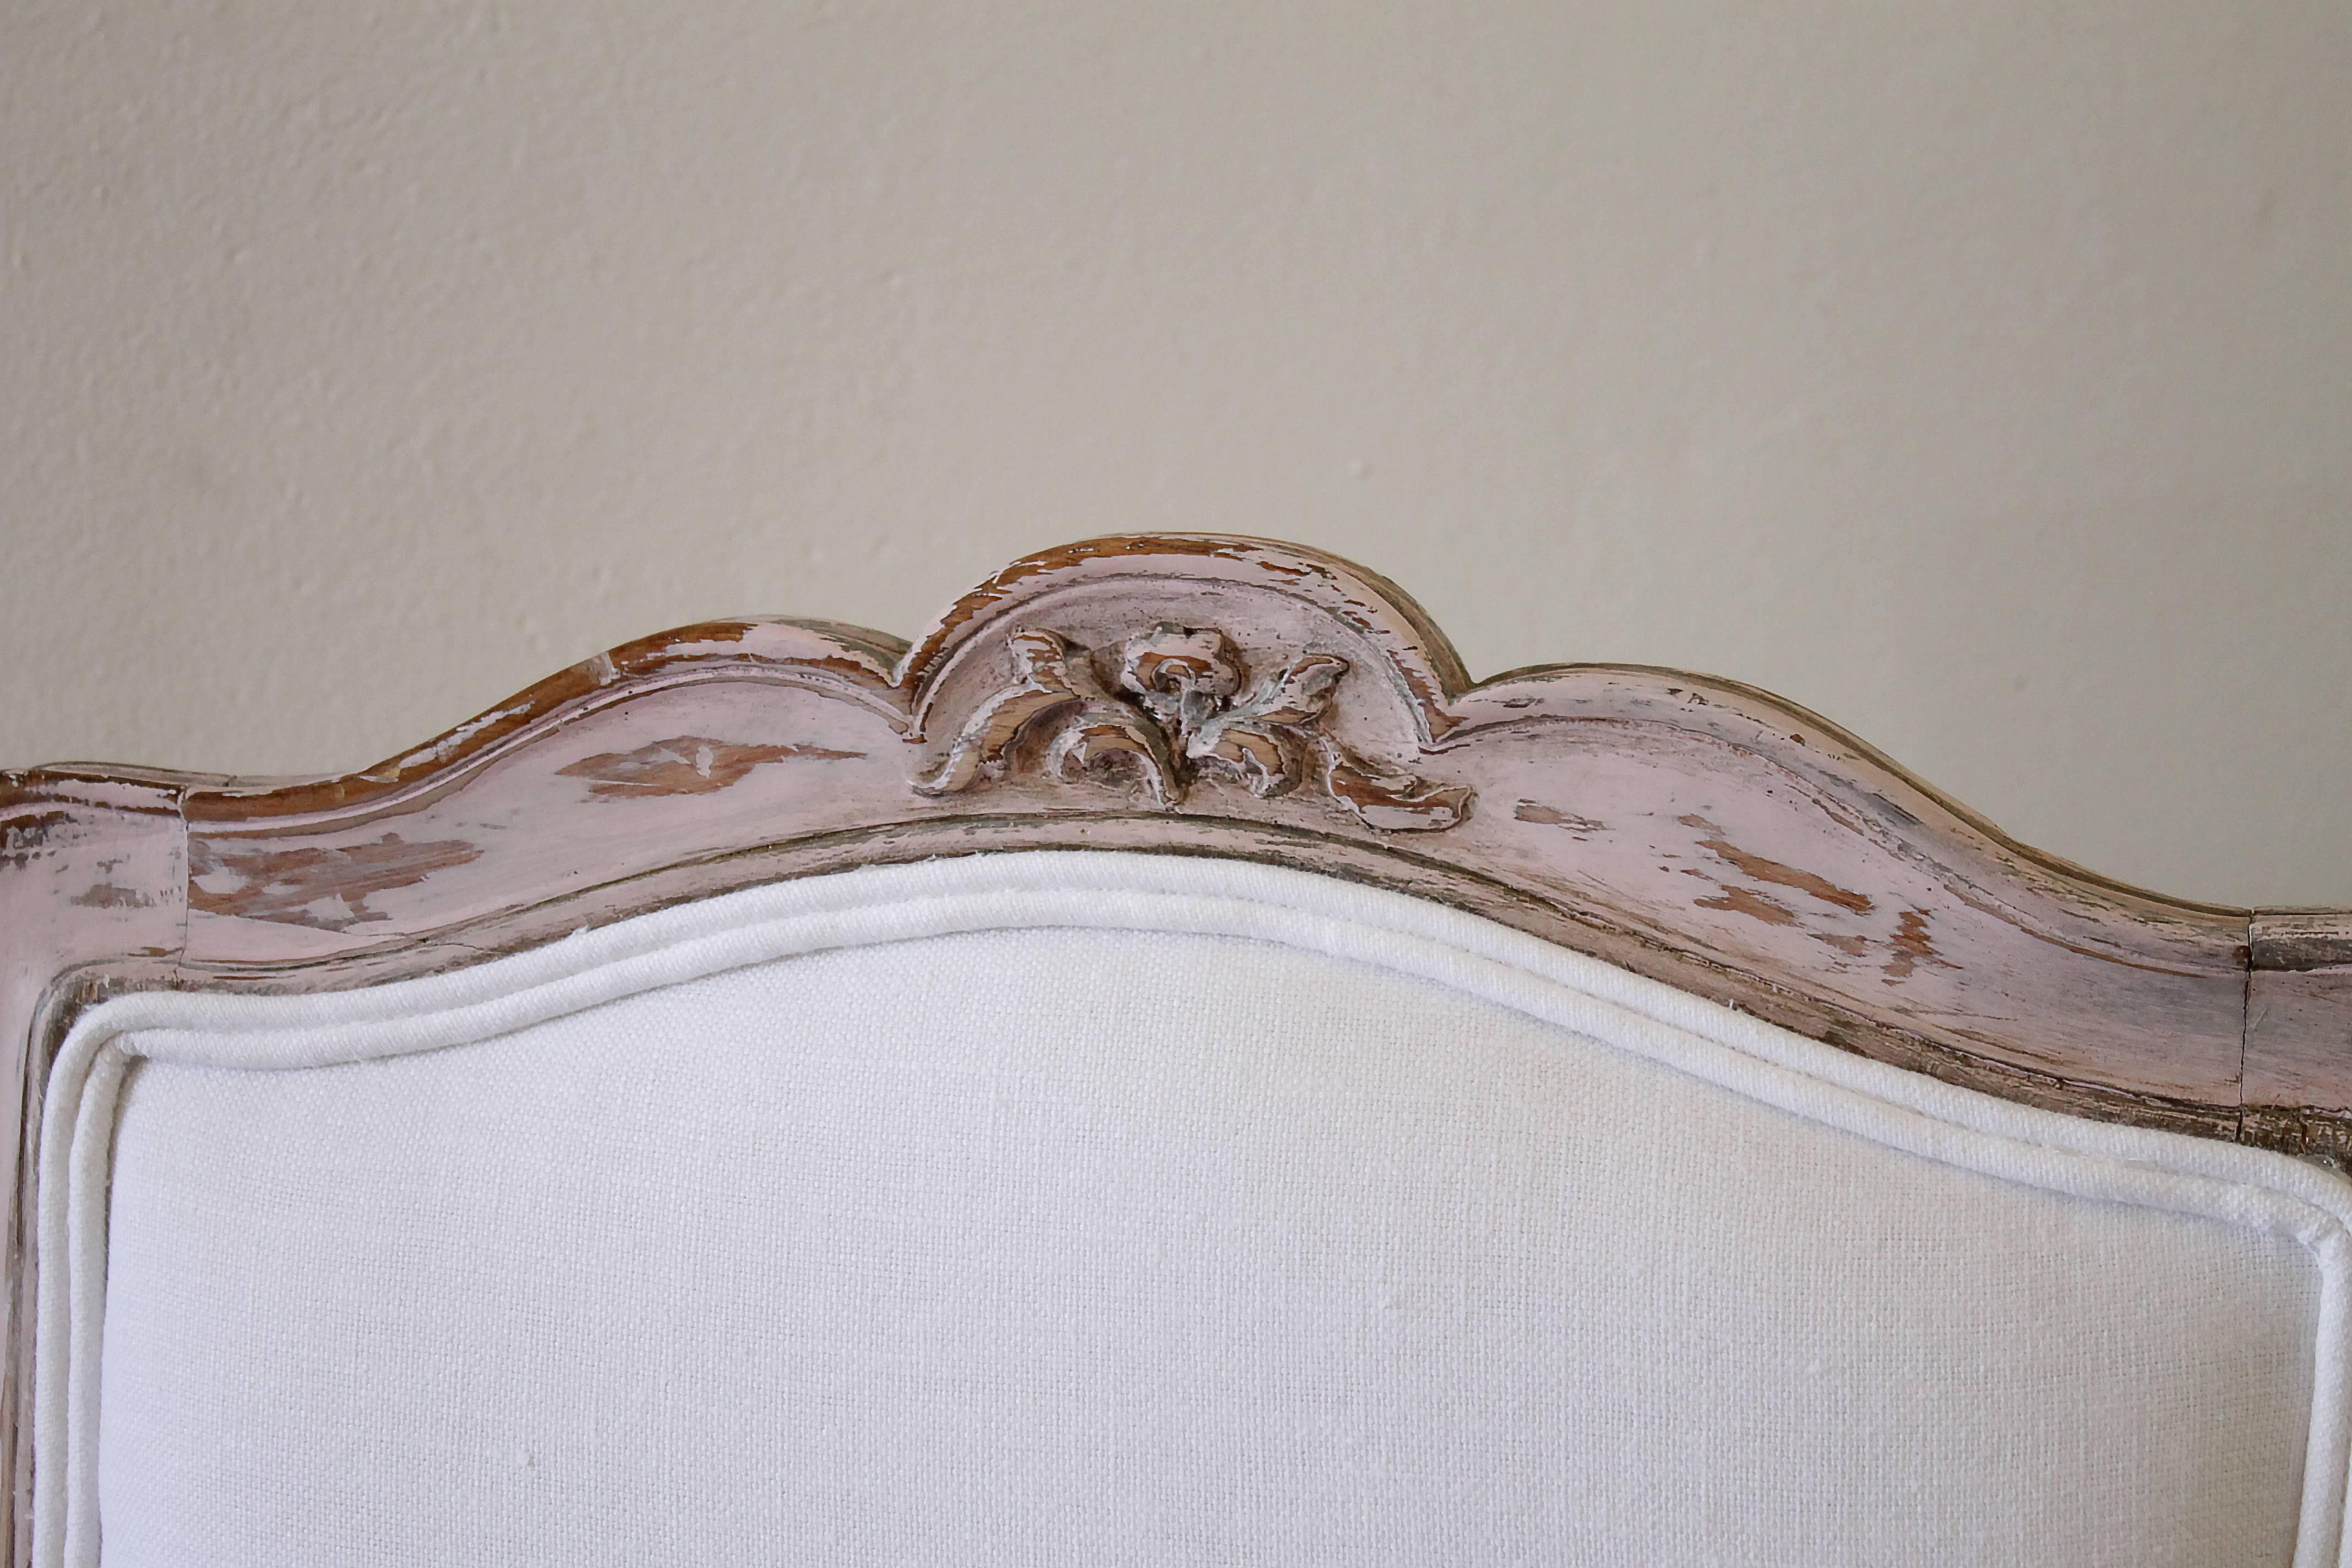 Chaise de toilette française ancienne peinte en rose pâle et tapissée de lin belge blanc.

Mesures : 22